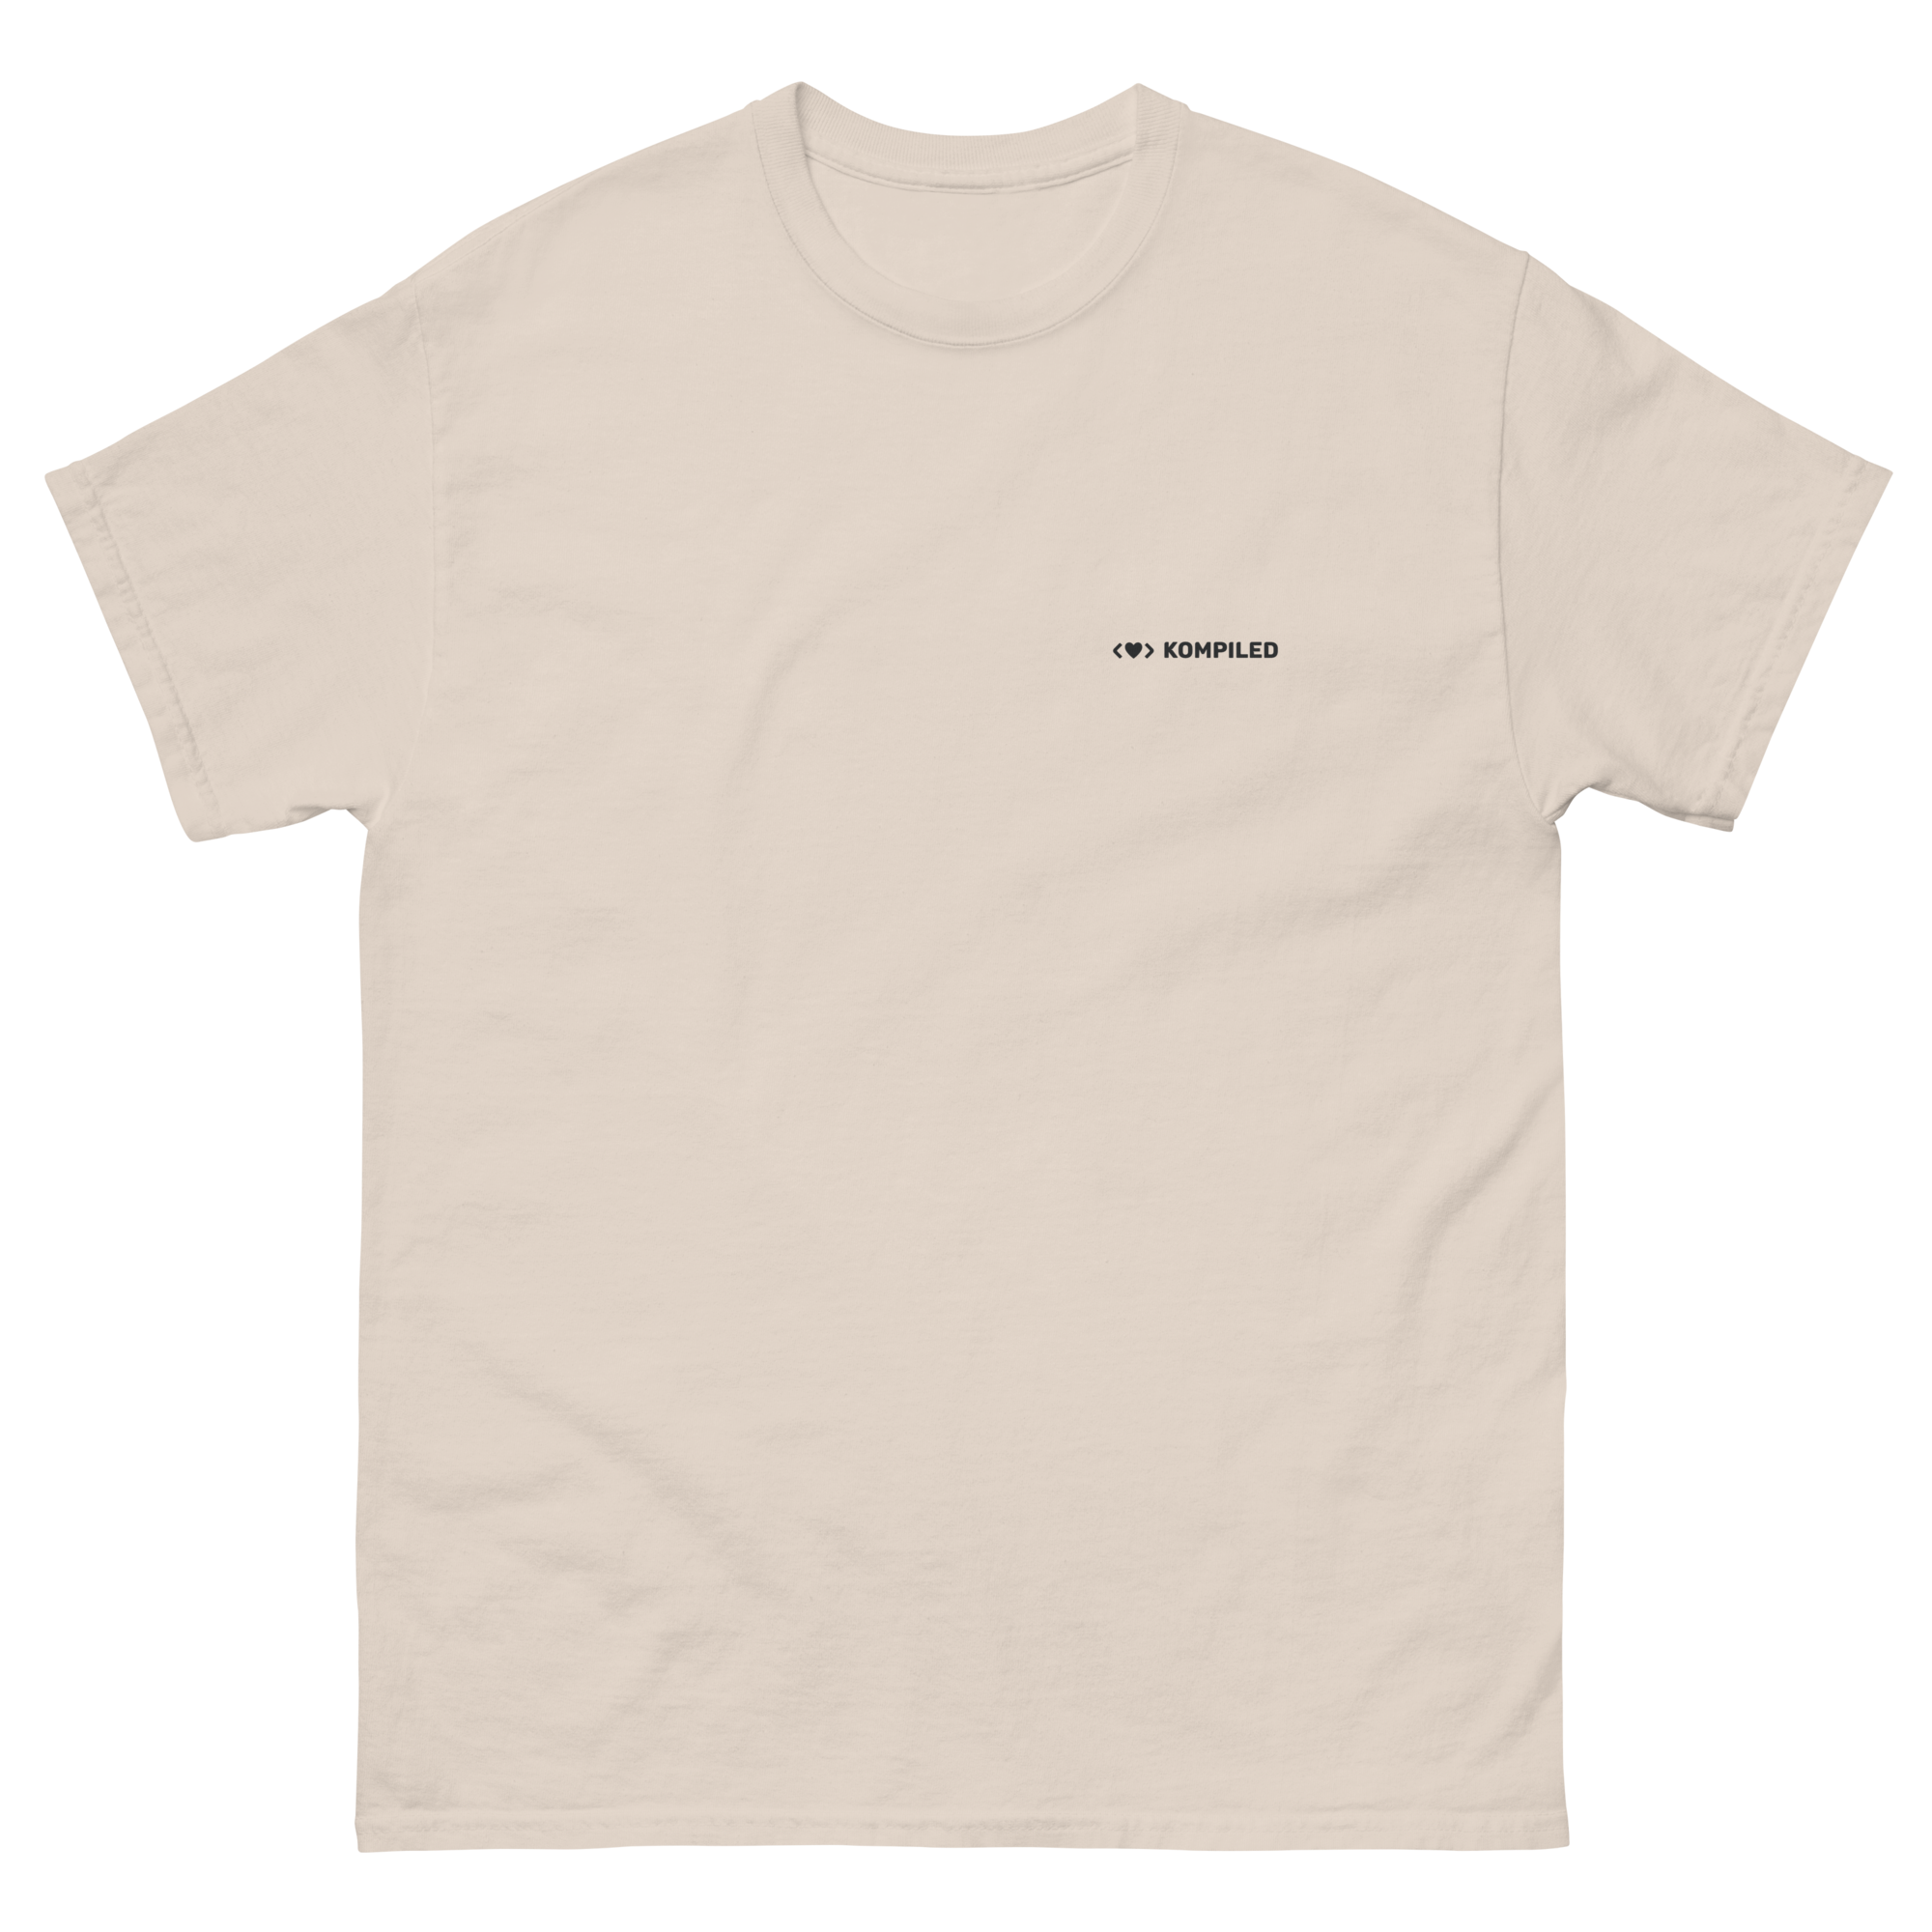 Lambo T-Shirt